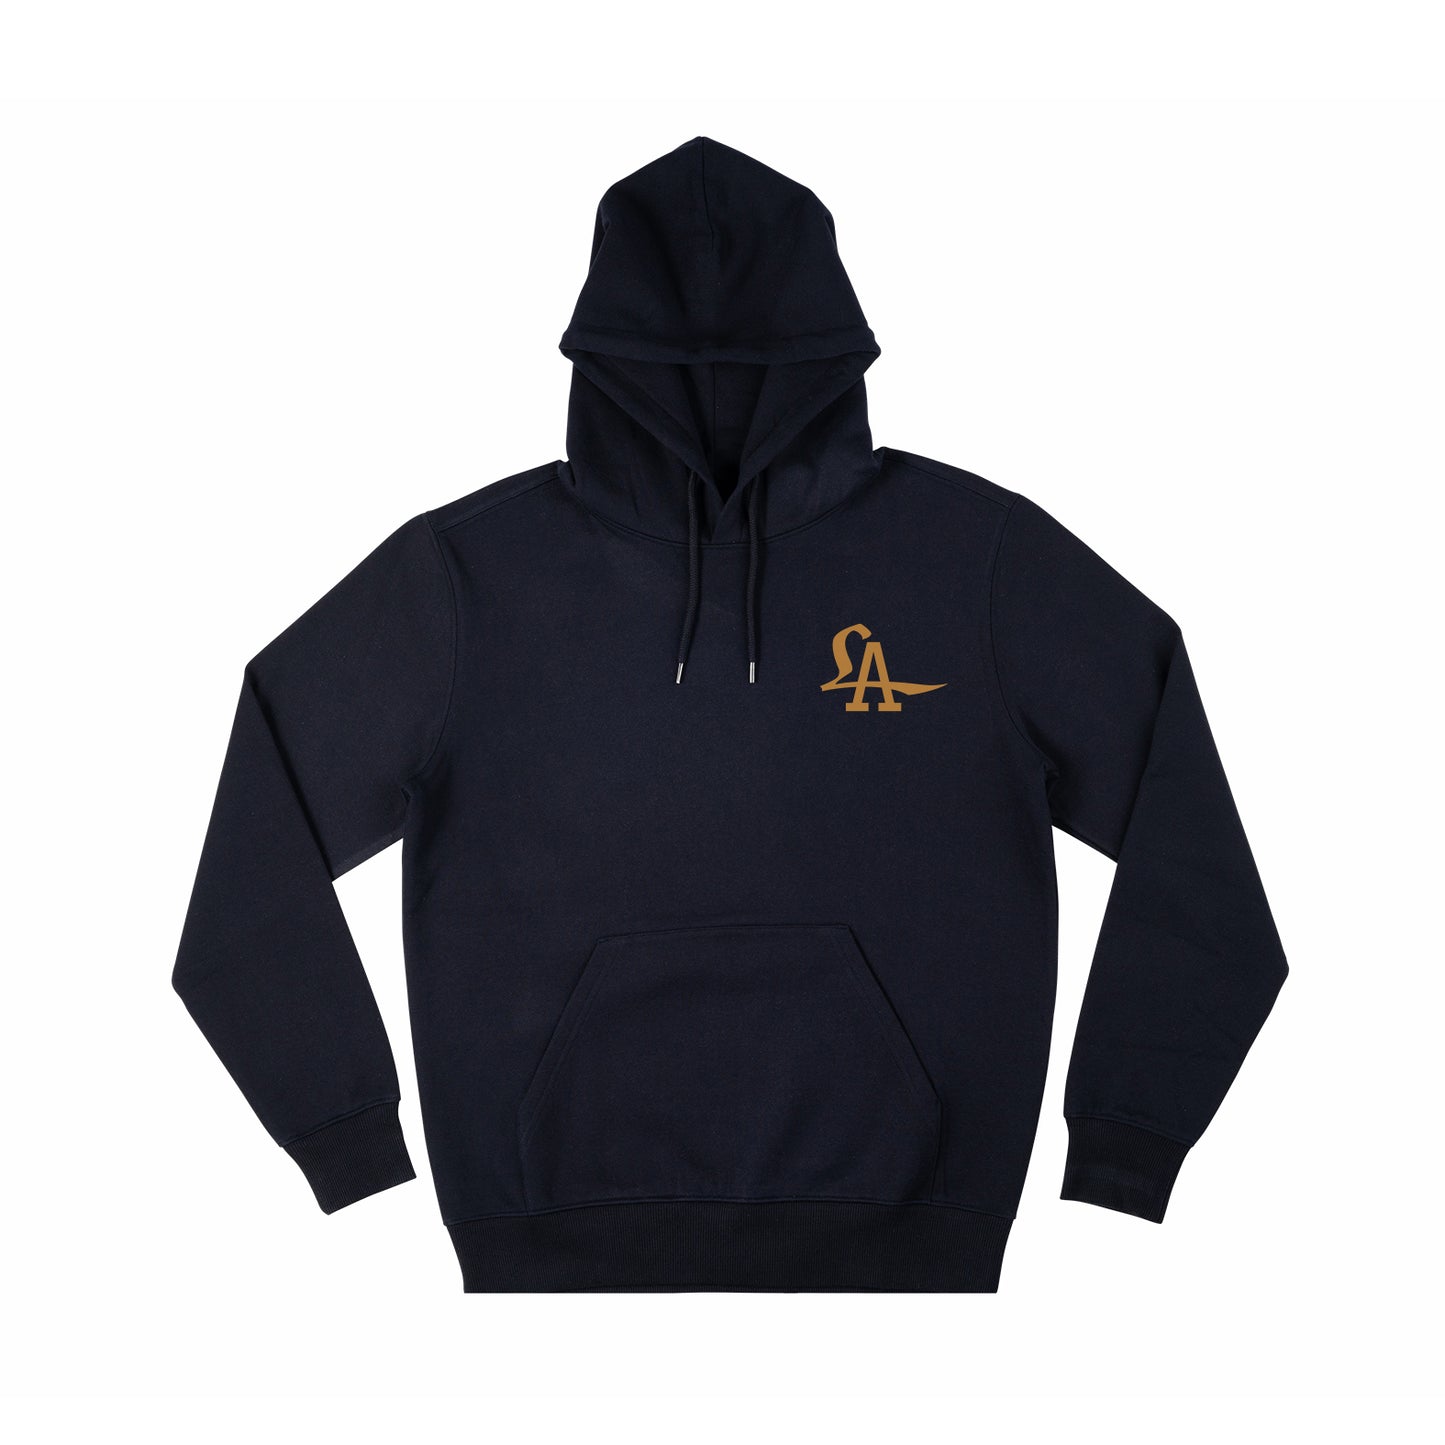 Lust Angeles logo hoodie in navy